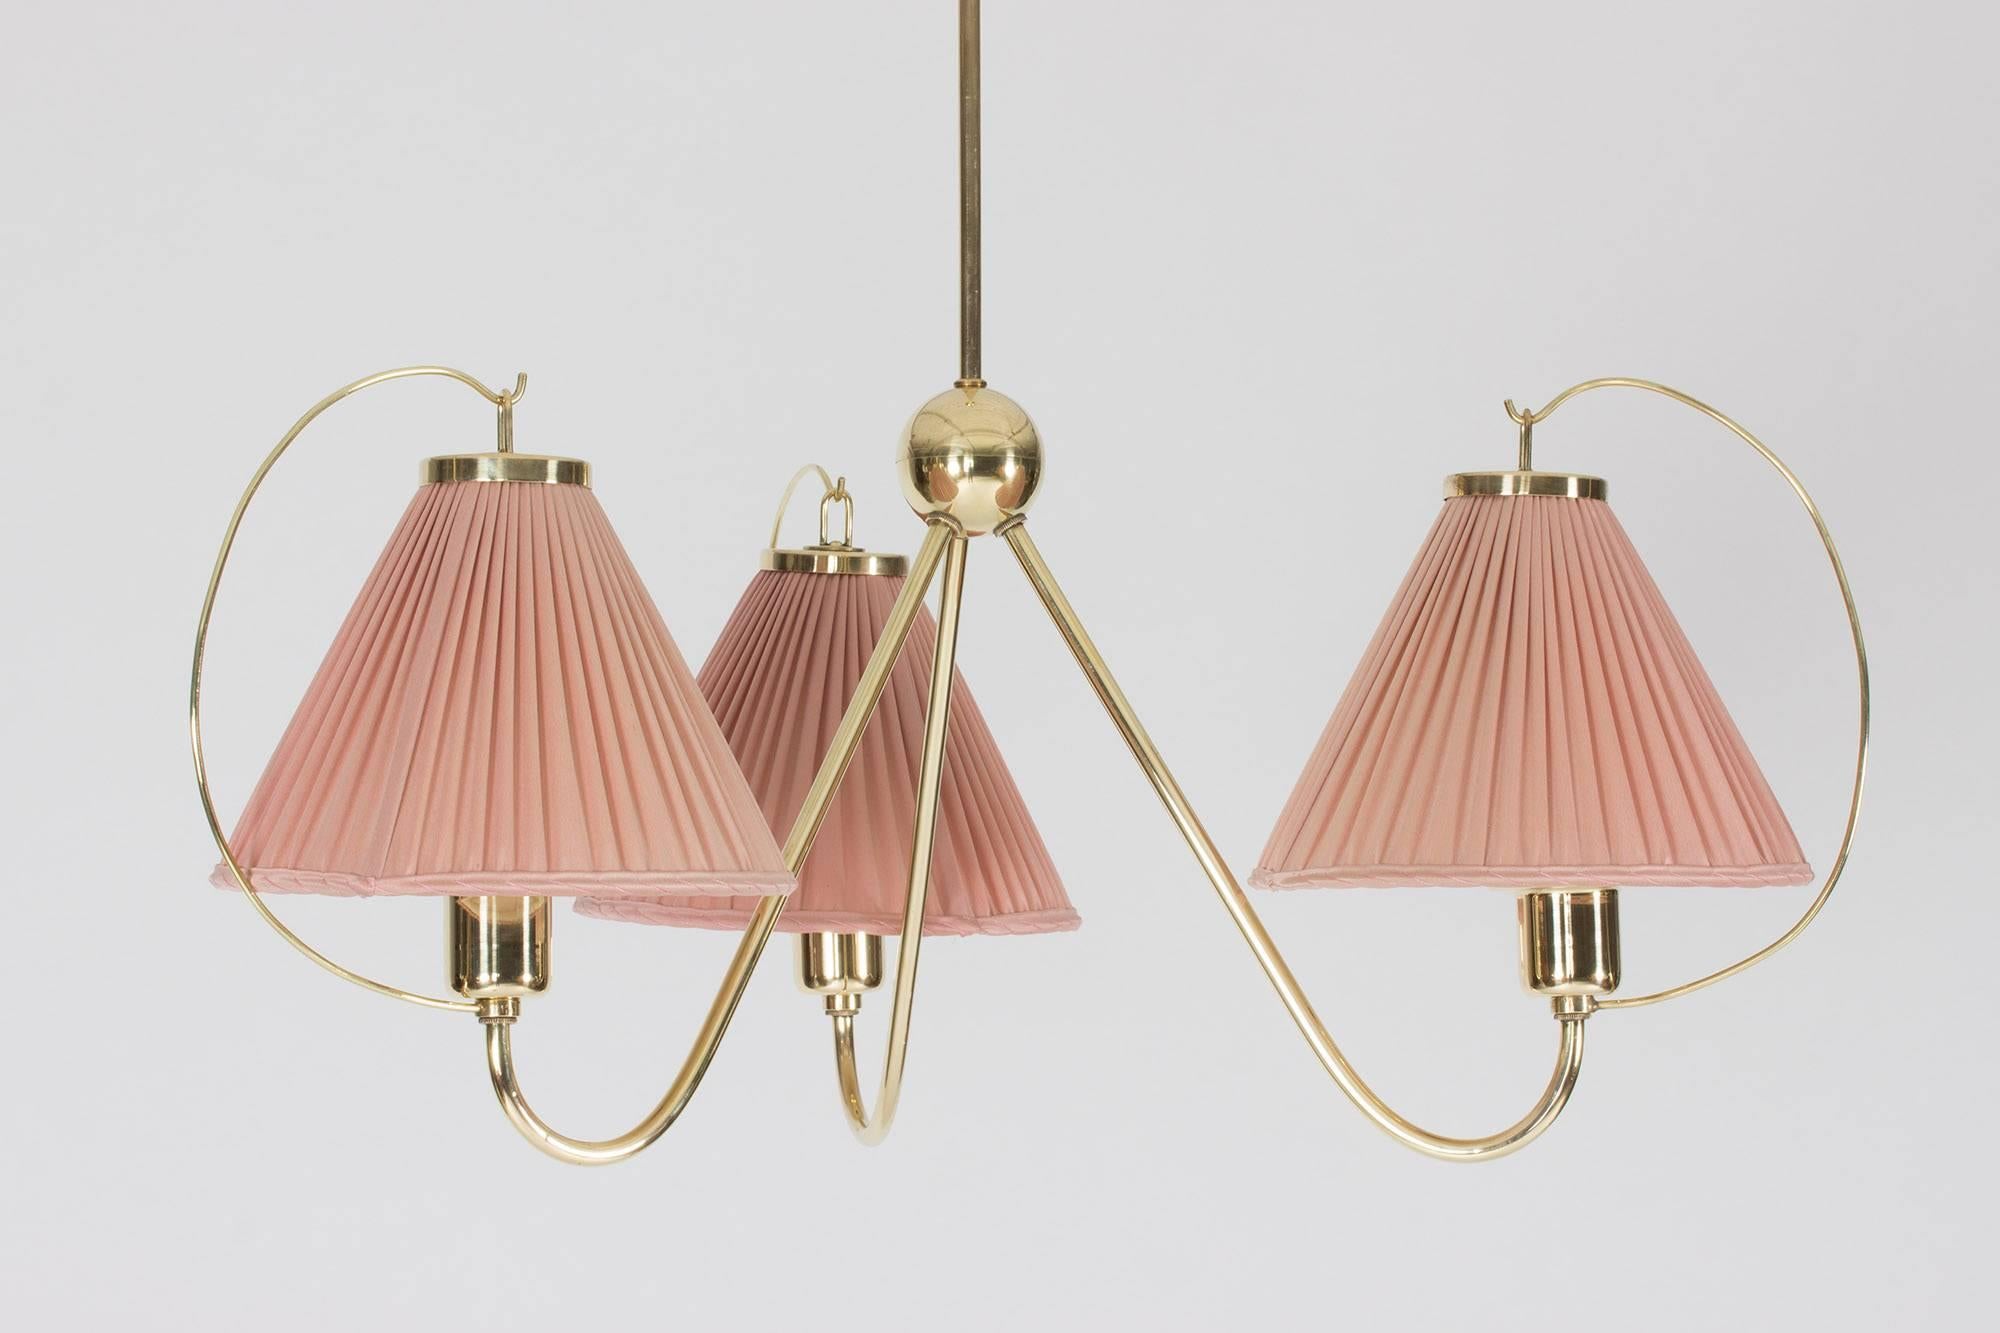 Scandinavian Modern Brass Ceiling Lamp by Josef Frank